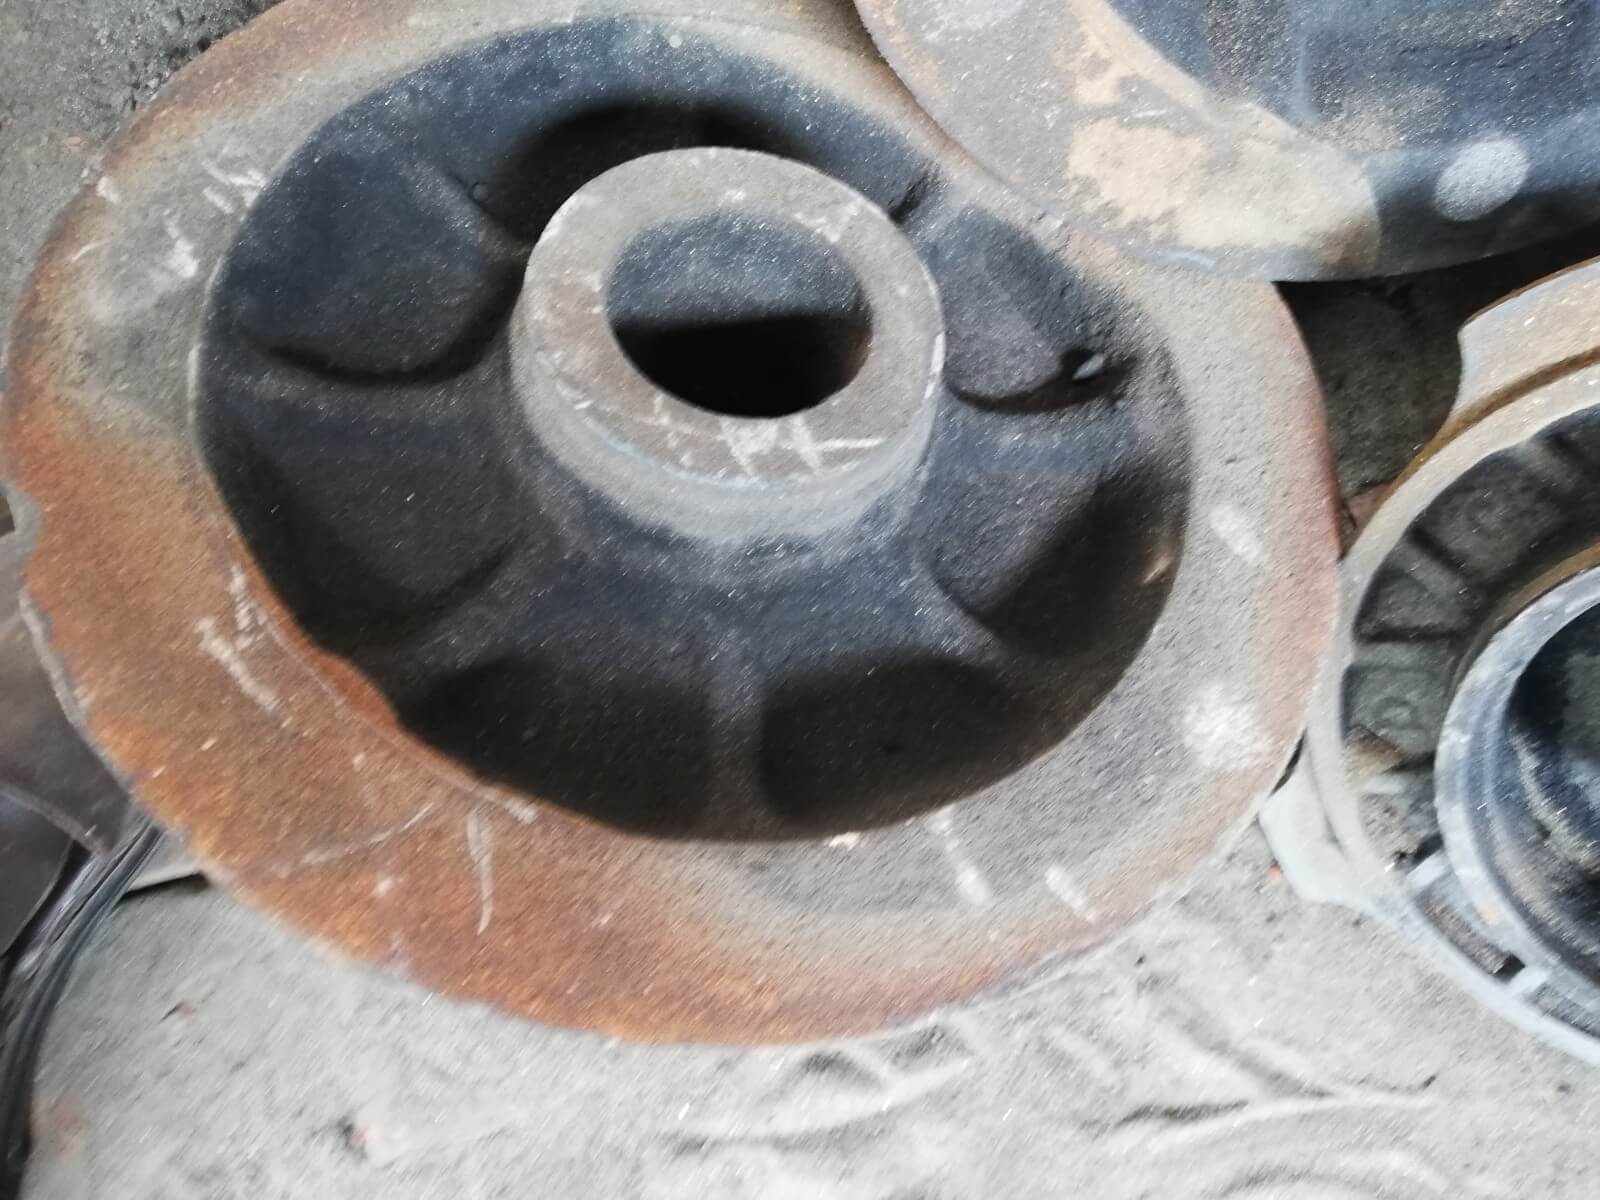 metal casting hub close up, rickshaw and loader disk break and disk hubs, wheel hub or casting steel hub